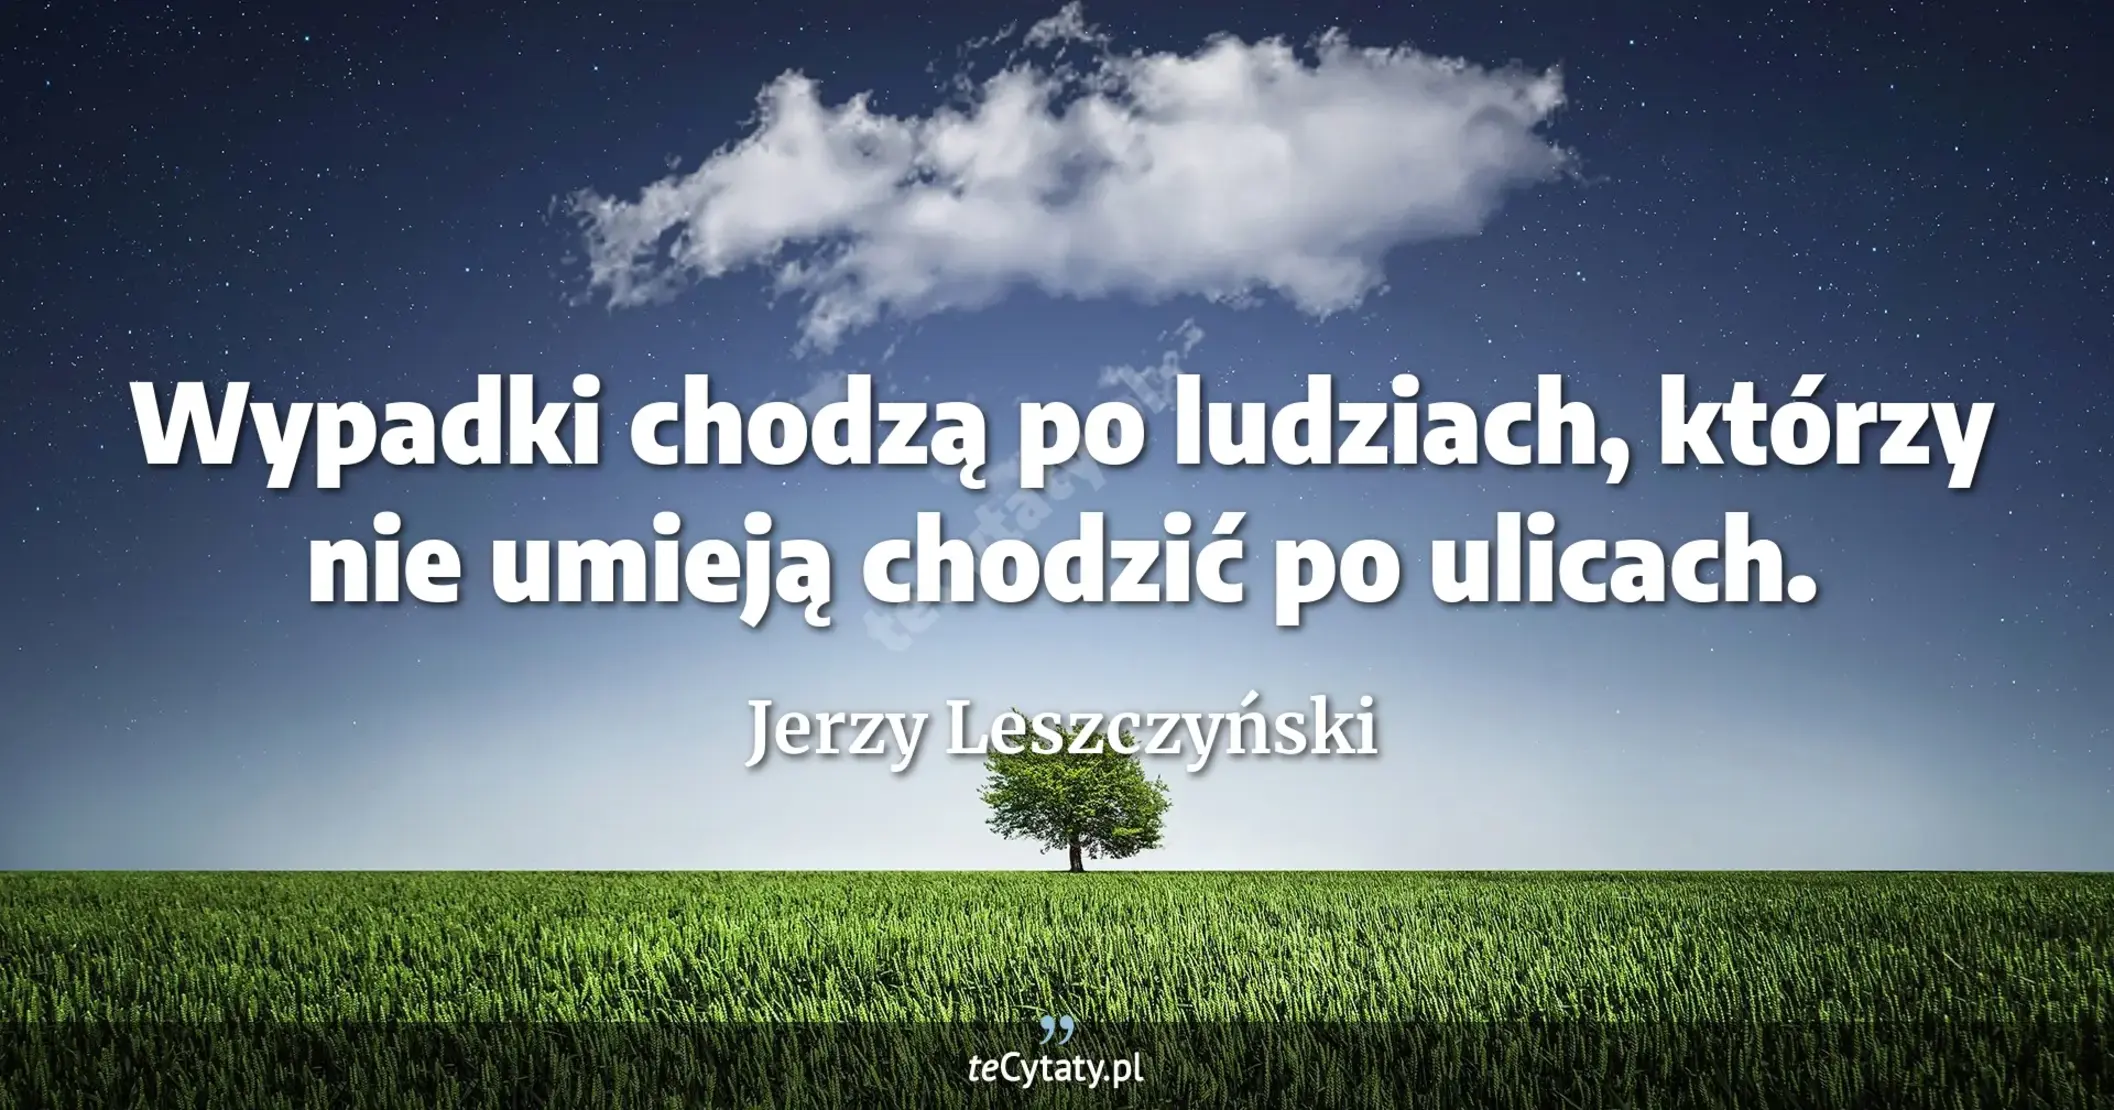 Wypadki chodzą po ludziach, którzy nie umieją chodzić po ulicach. - Jerzy Leszczyński